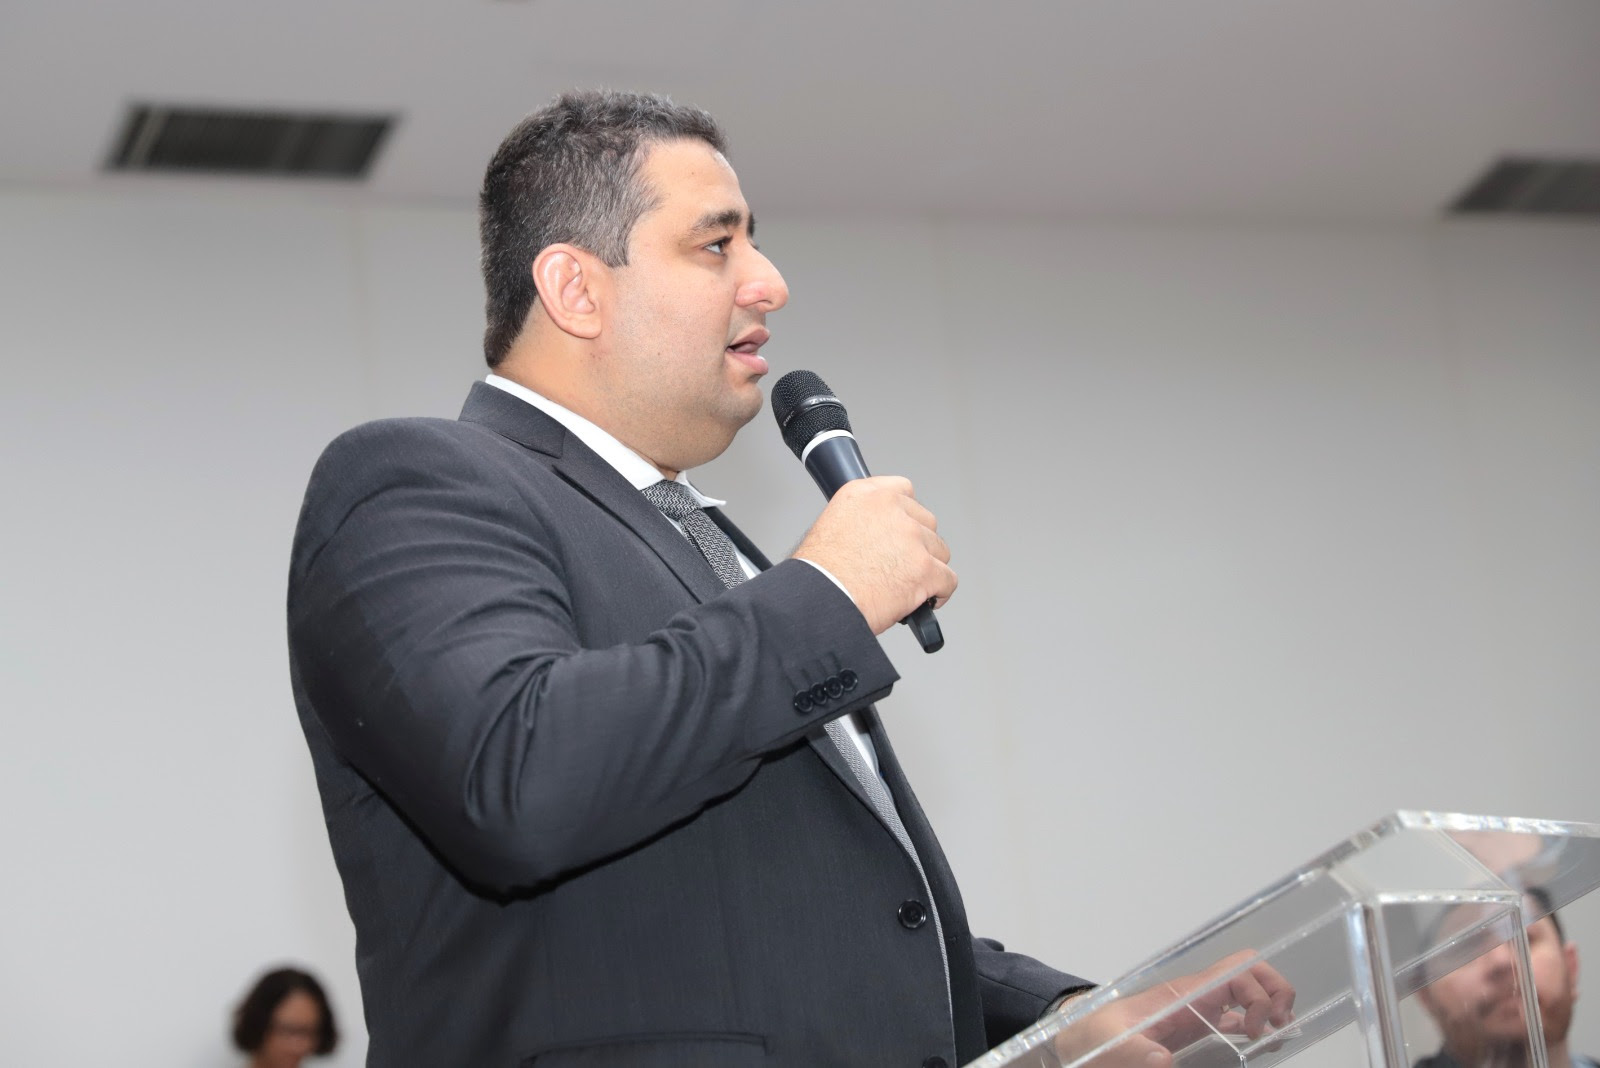 “Queremos que este encontro nos permita esclarecer quaisquer falhas de comunicação que geram dúvidas na população”, esclareceu o promotor Pedro Jainer Clarindo da Silva.